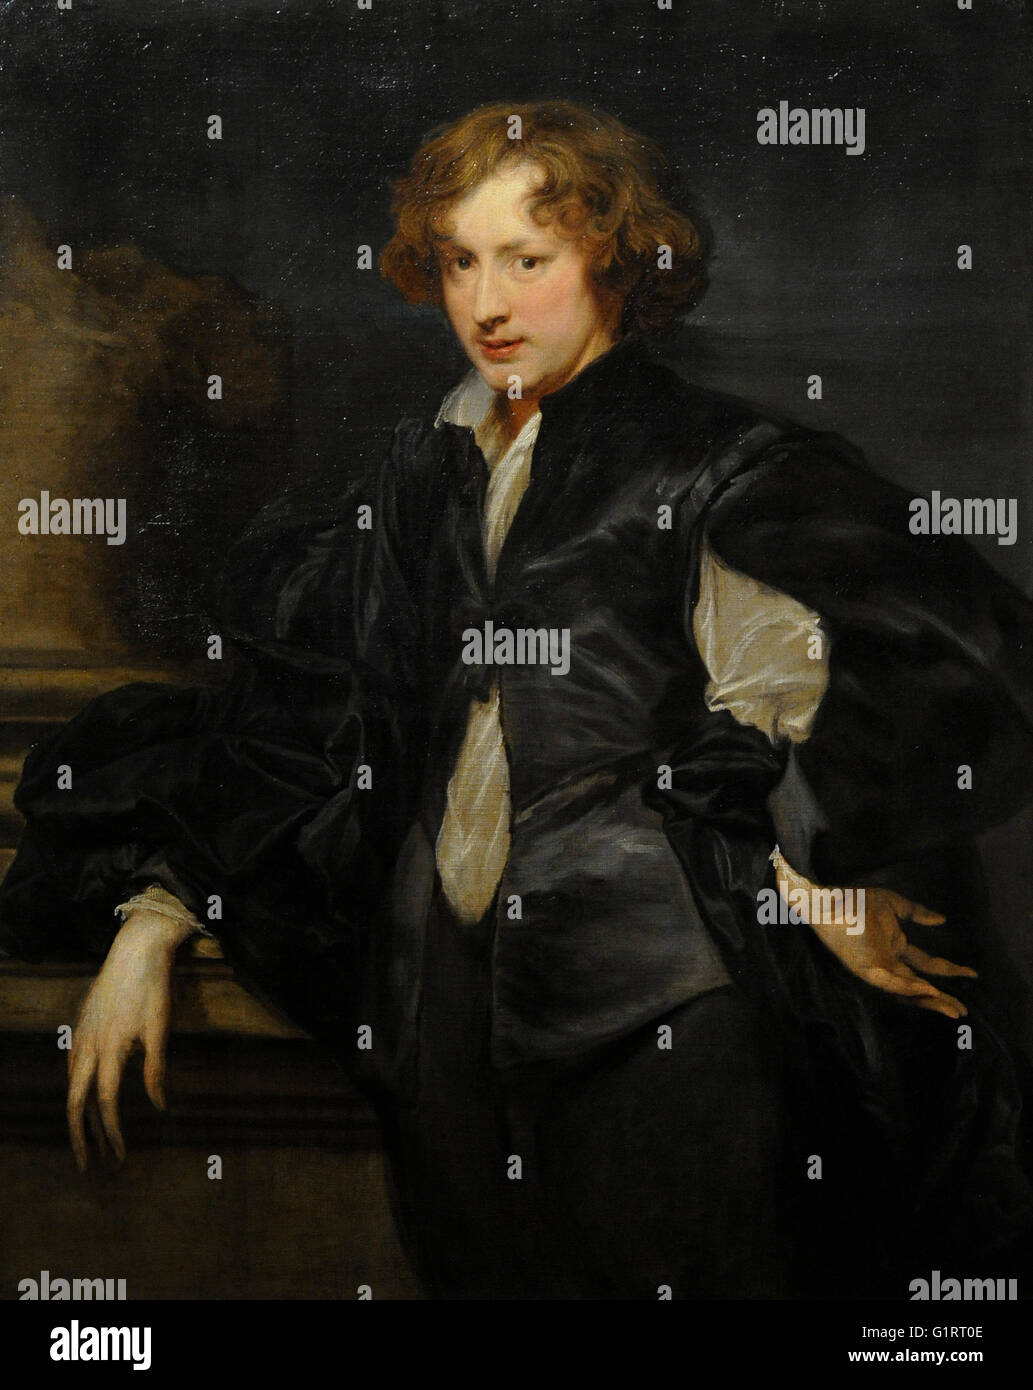 Anthony Van Dyck (1599-1641). Peintre baroque flamand. Auto-portrait, 1622-1623. Huile sur toile. Le Musée de l'Ermitage. Saint Petersburg. La Russie. Banque D'Images